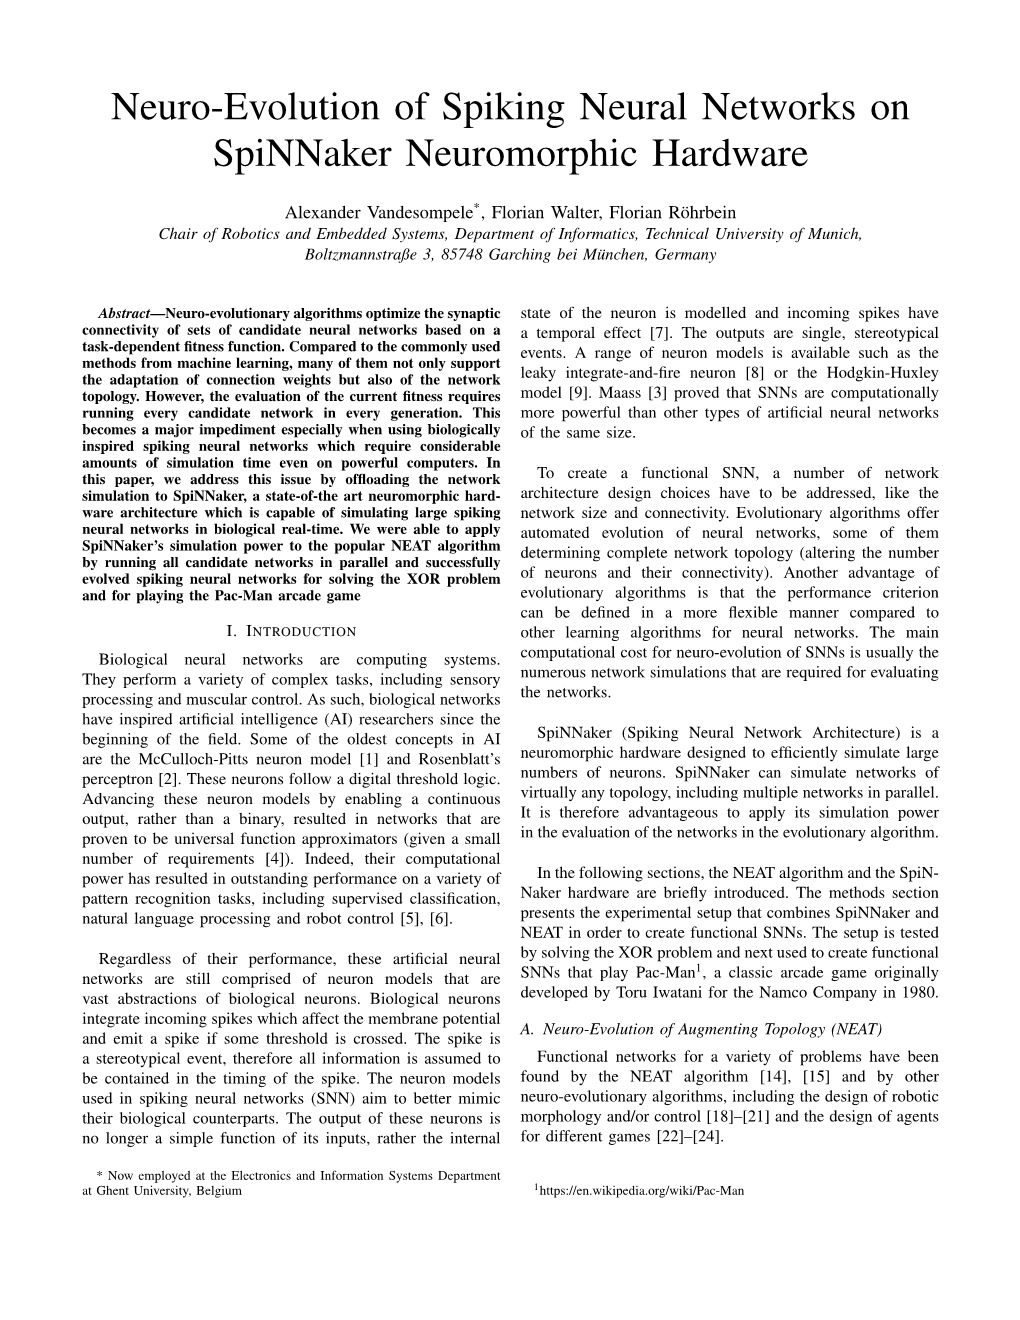 Neuro-Evolution of Spiking Neural Networks on Spinnaker Neuromorphic Hardware